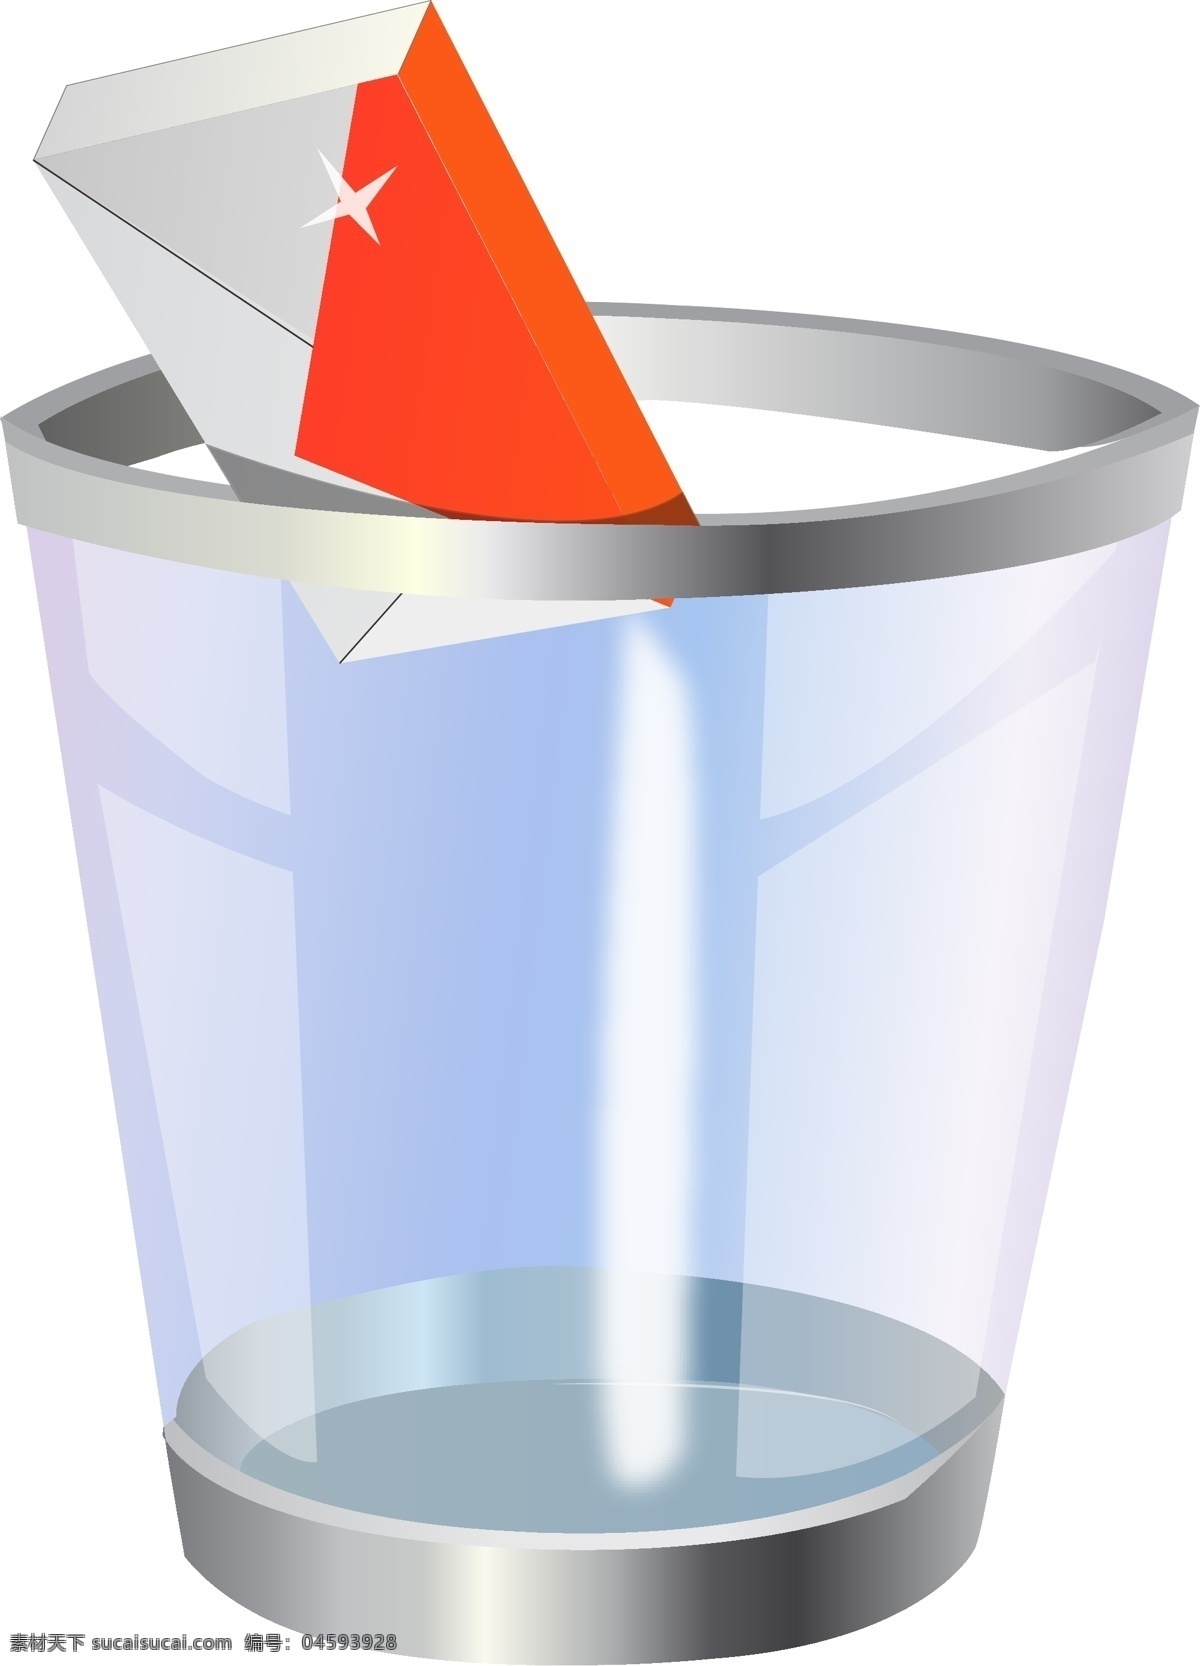 透明 杯子 垃圾桶 邮件 矢量 模板下载 透明杯子 高档杯子 有质感 矢量图 日常生活